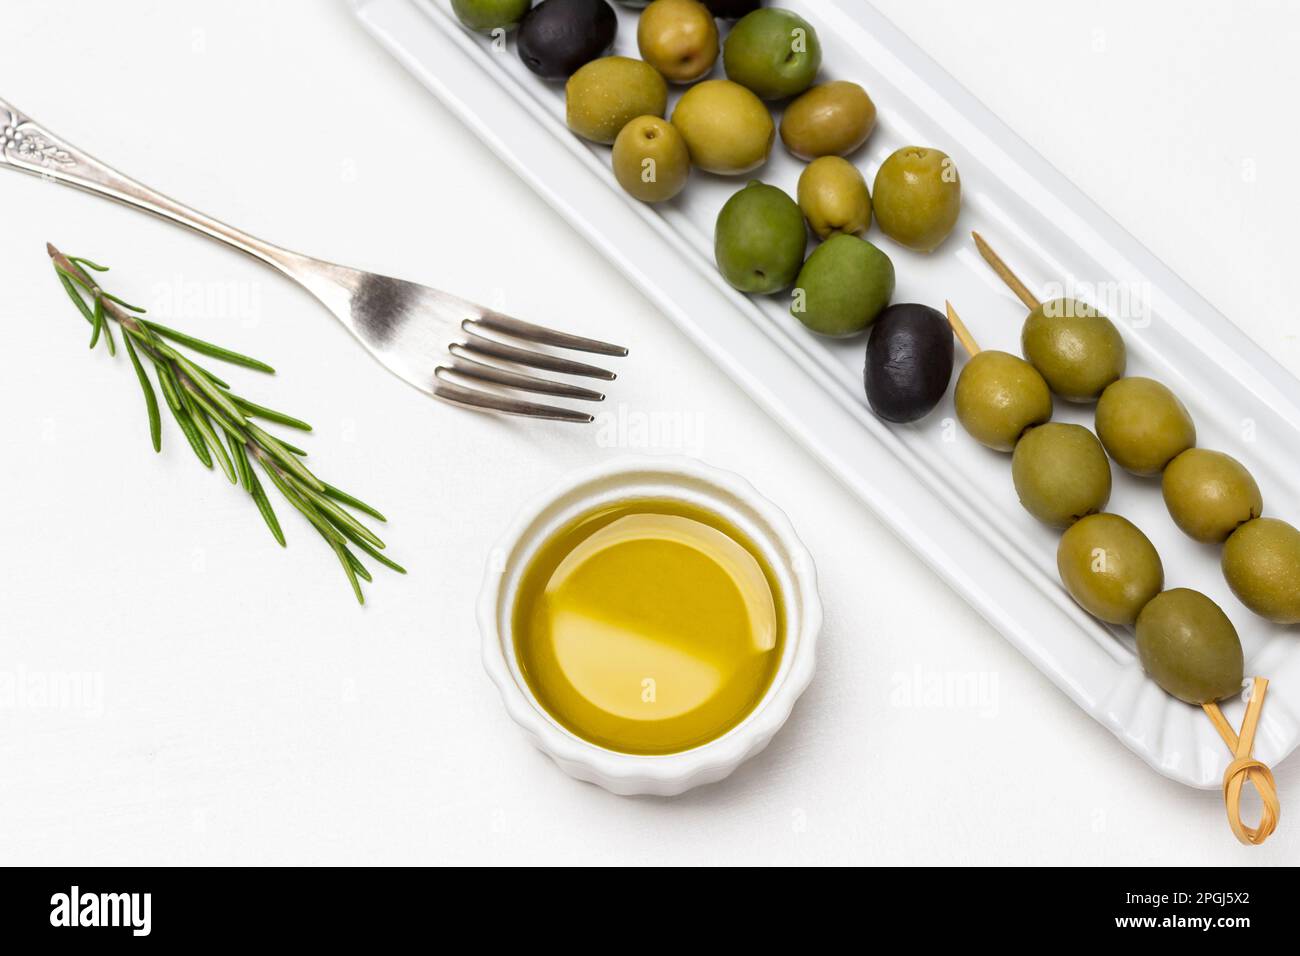 Grüne Oliven auf einem weißen Teller. Olivenöl in einer kleinen Schüssel. Gabel und Zweig Rosmarin auf dem Tisch. Weißer Hintergrund. Stockfoto